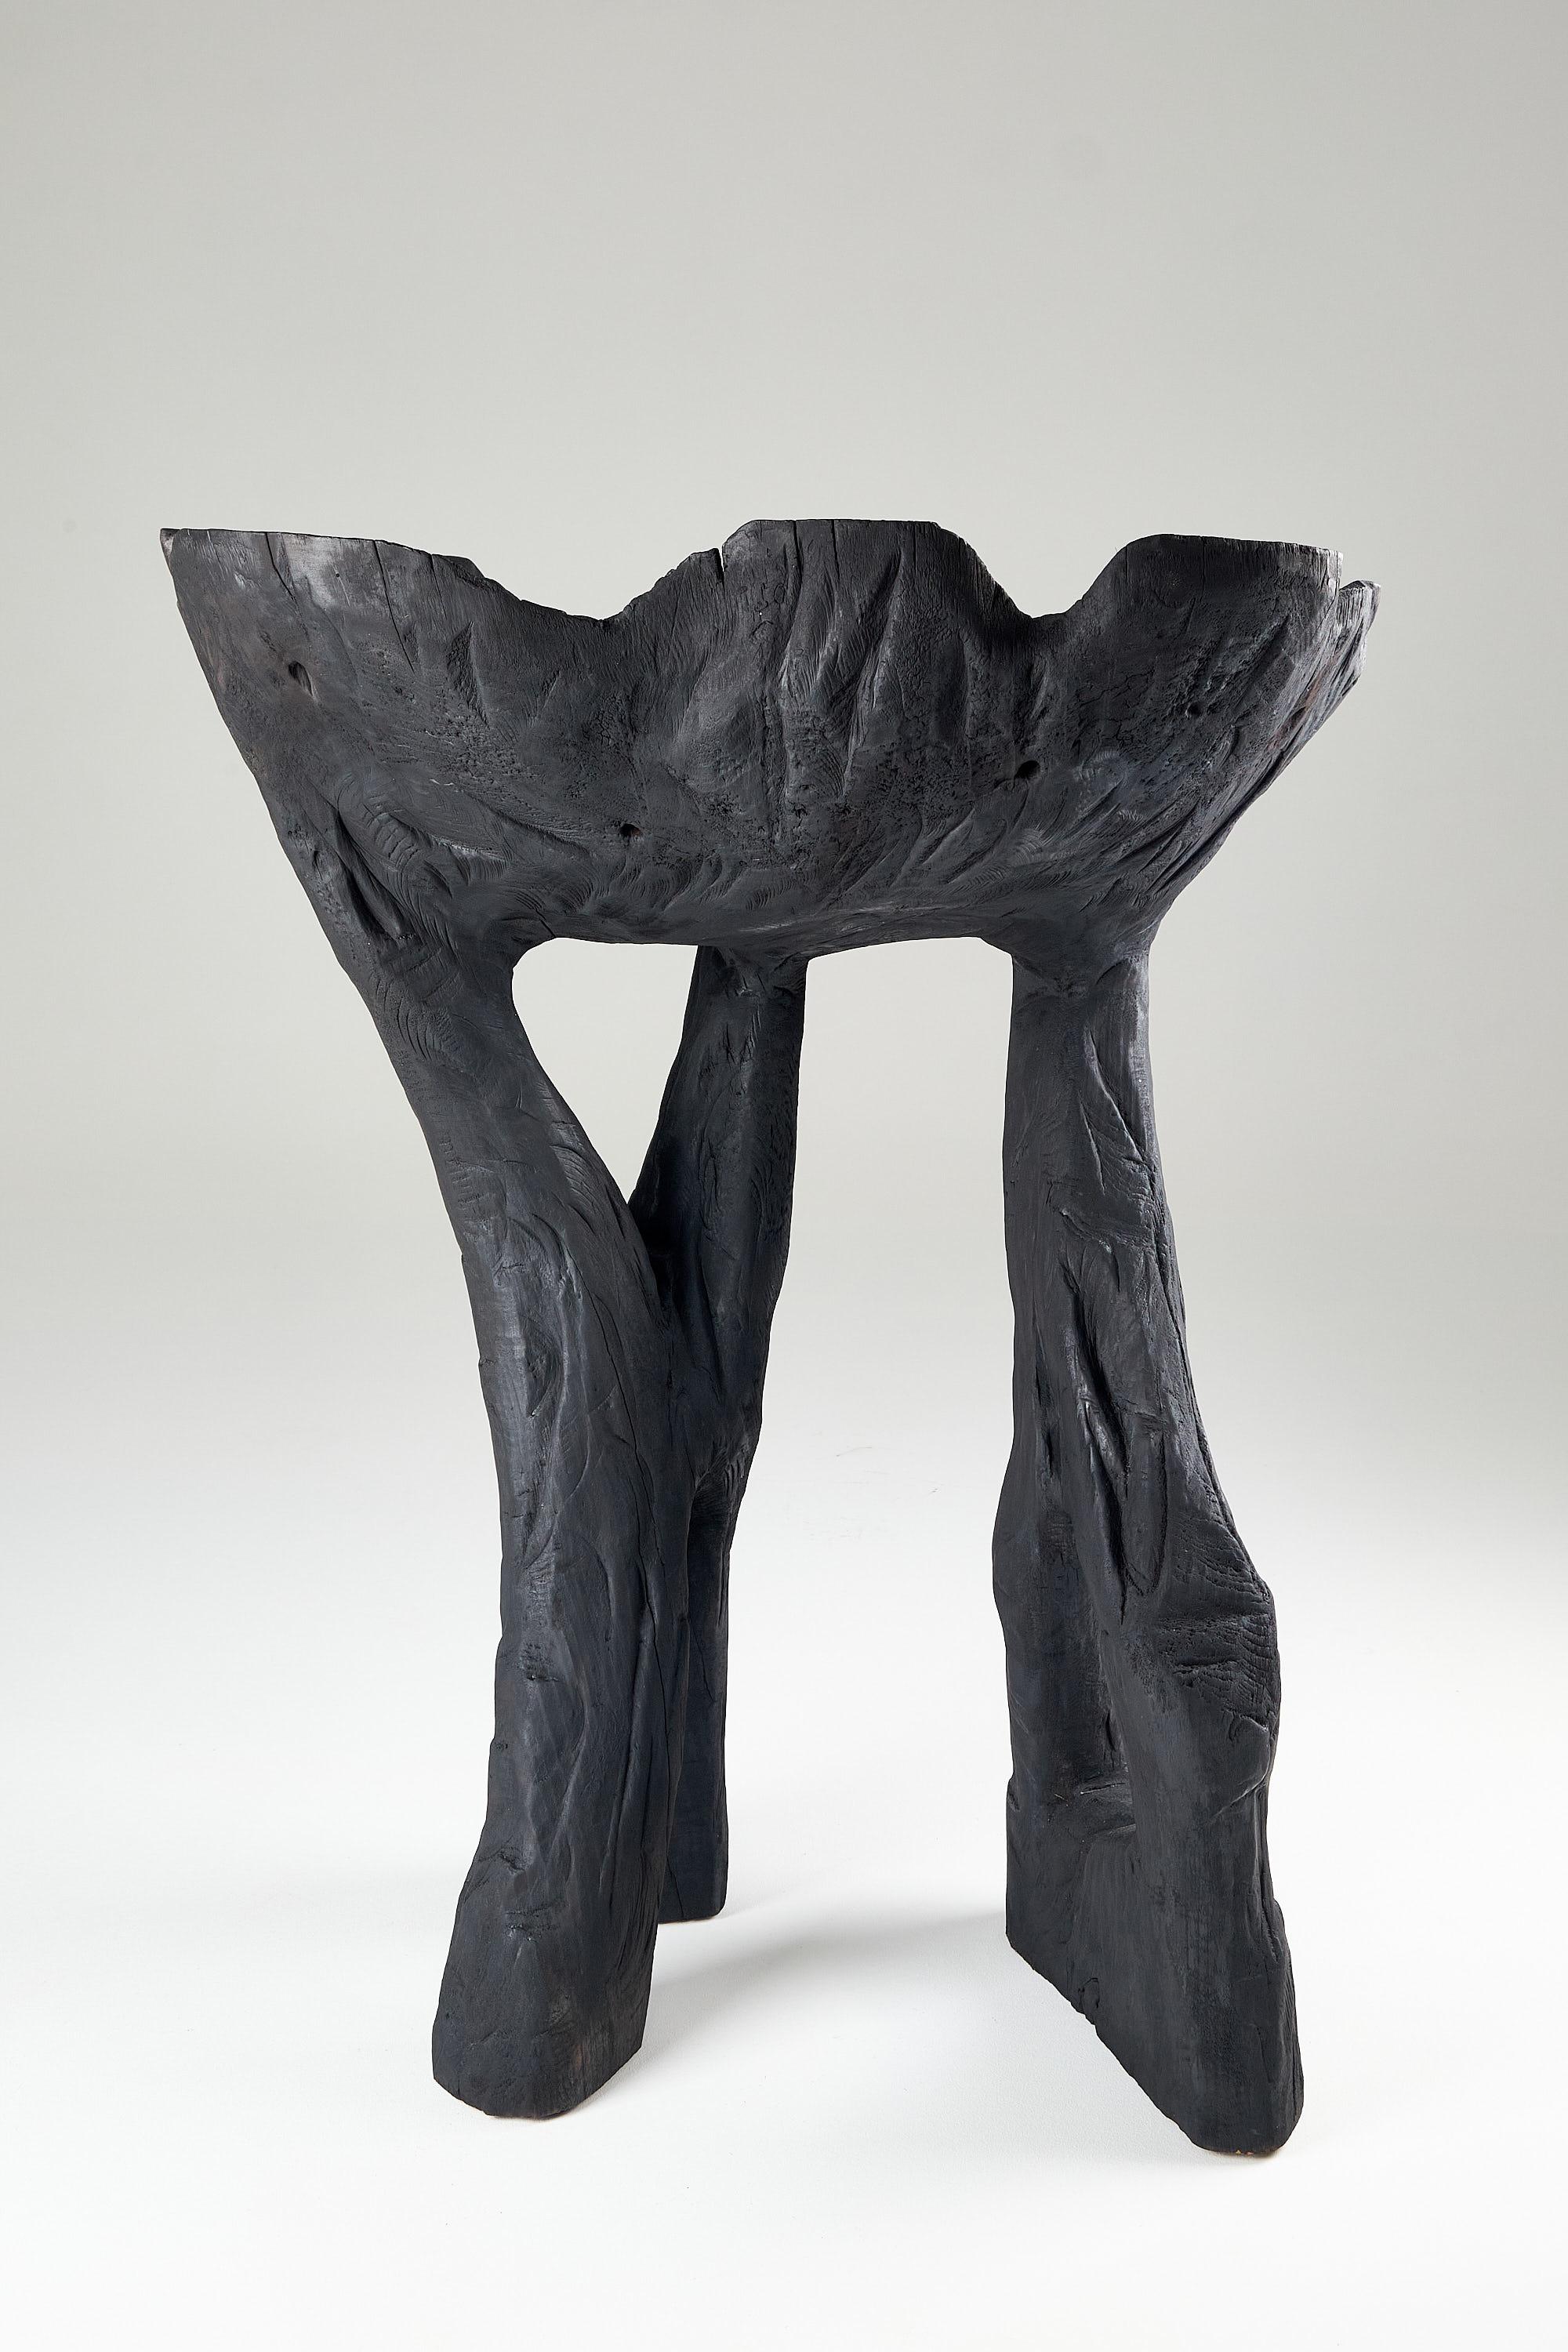 Still Stand Abstrakte Biomorphe Holzschale, Kettensäge geschnitzt, Funktionale Skulptur.

Geschnitzt im Fluss der Inspiration aus einem einzigen Stück Holz